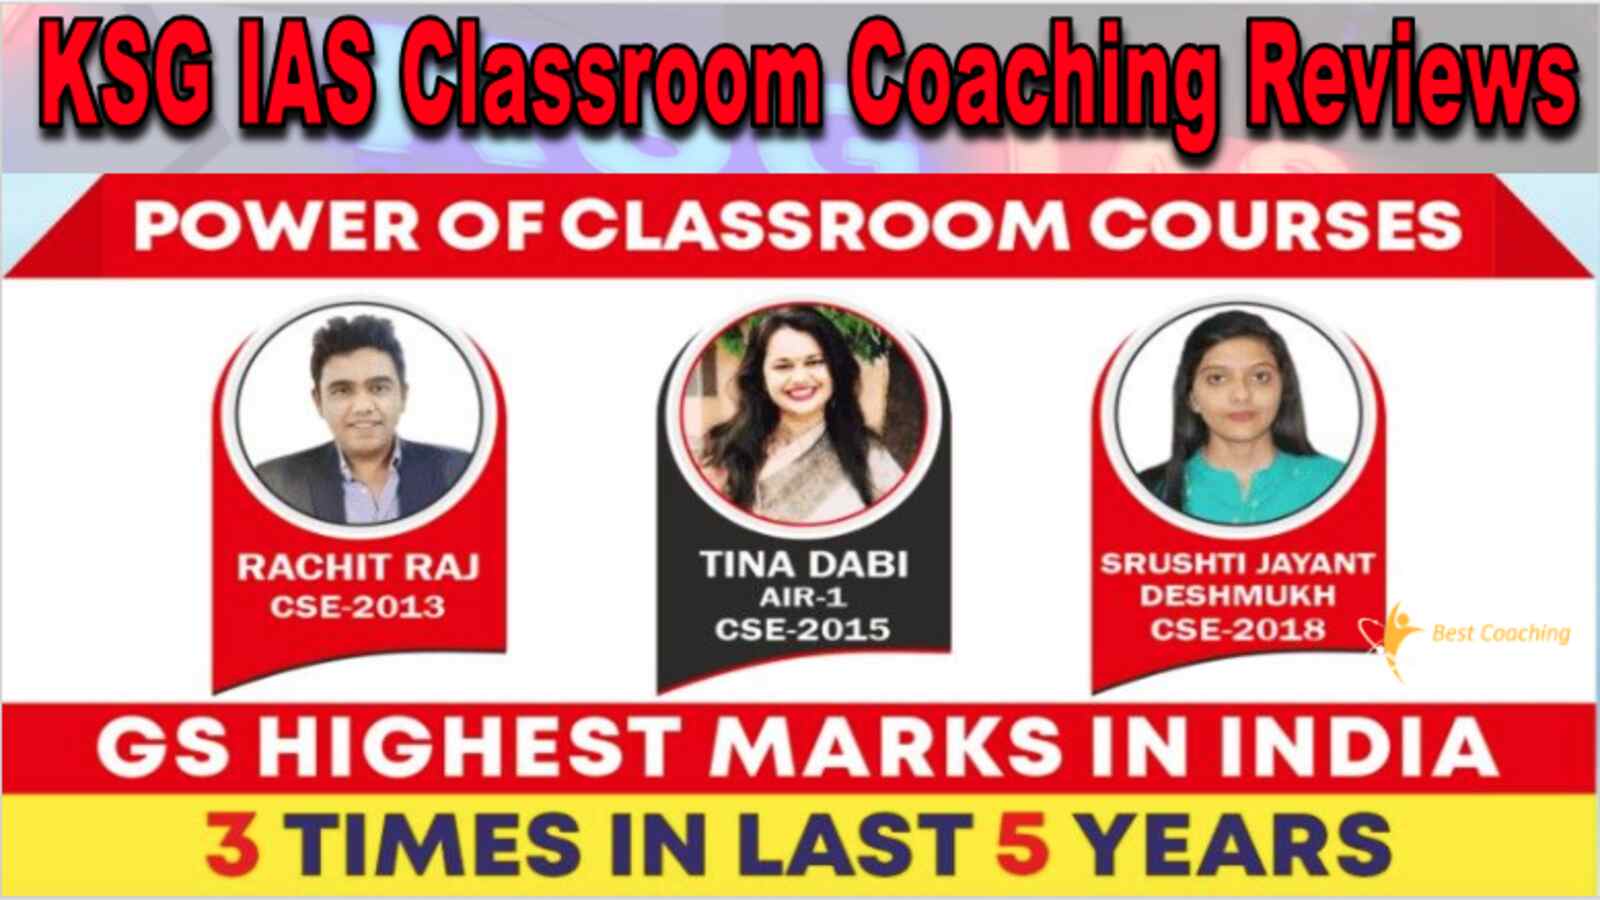 KSG IAS Classroom Coaching Delhi Review